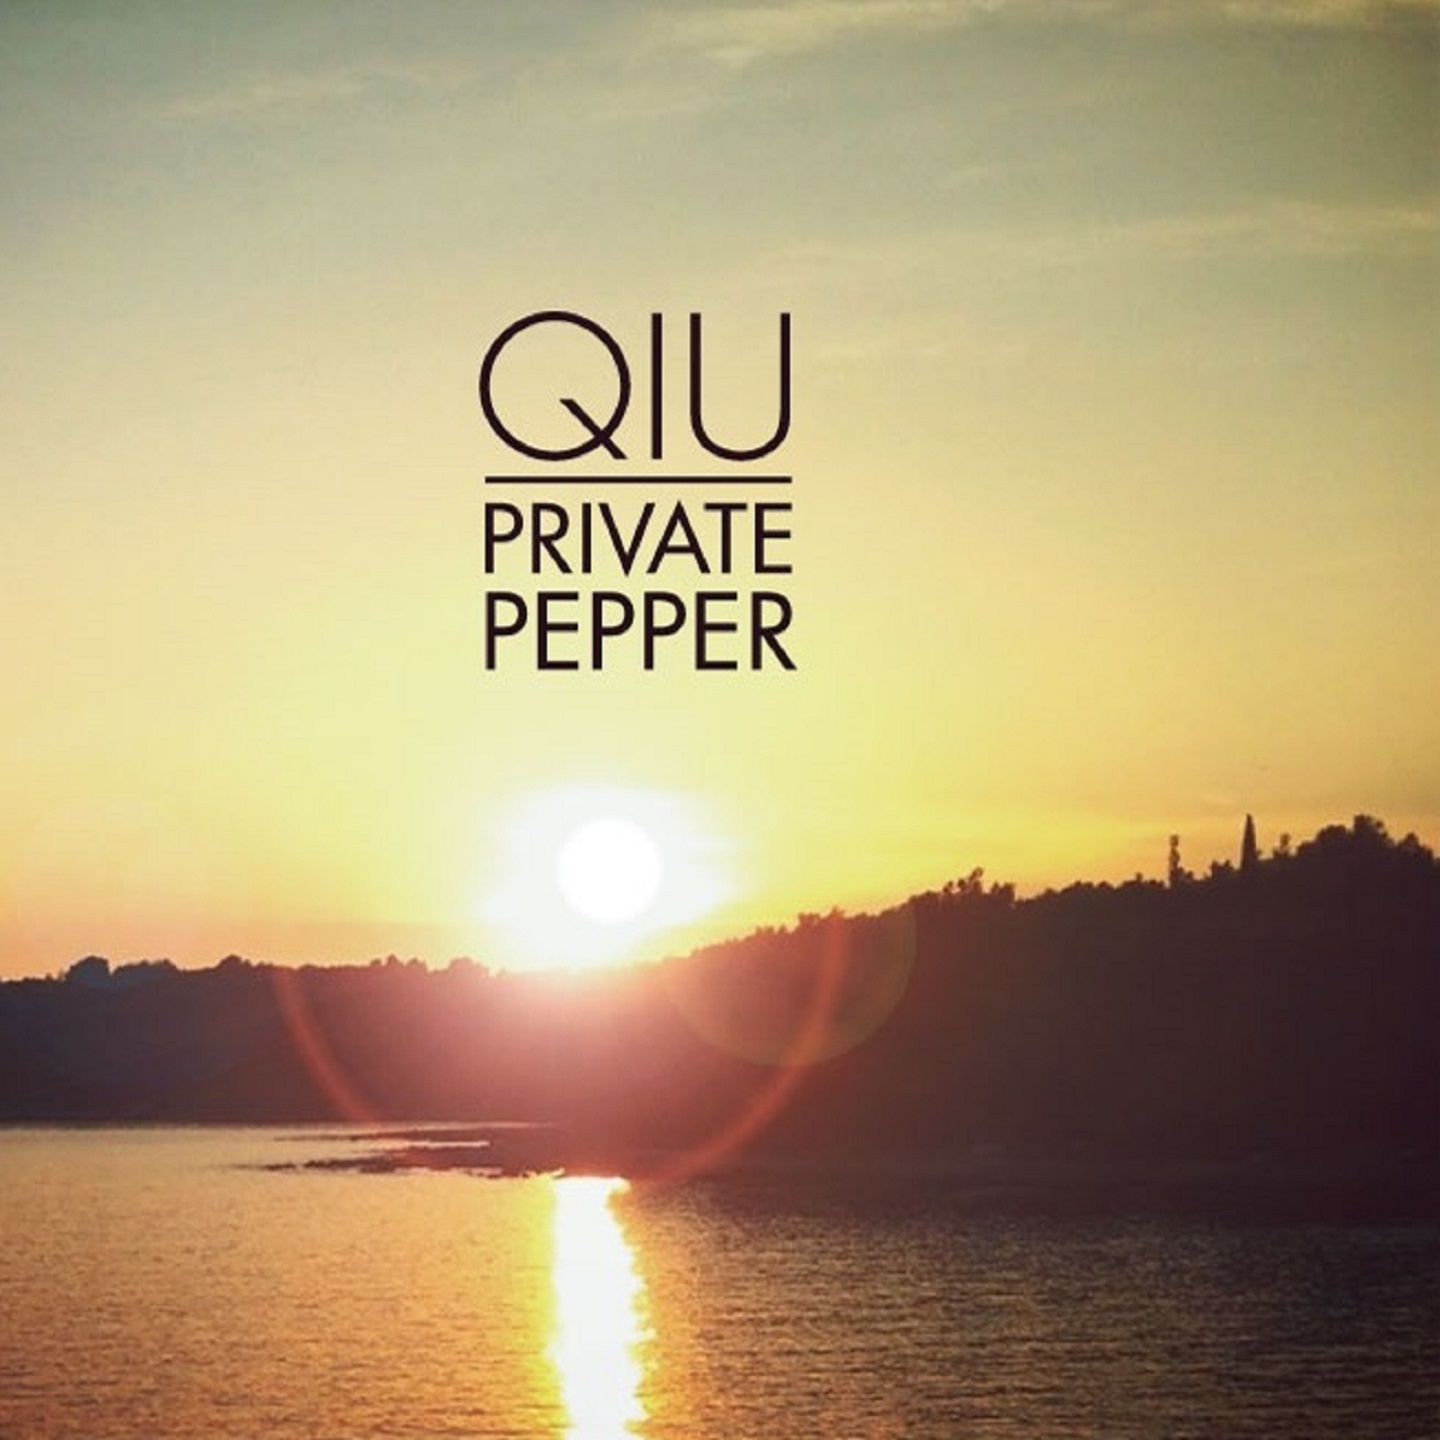 Private Pepper "Qiu"